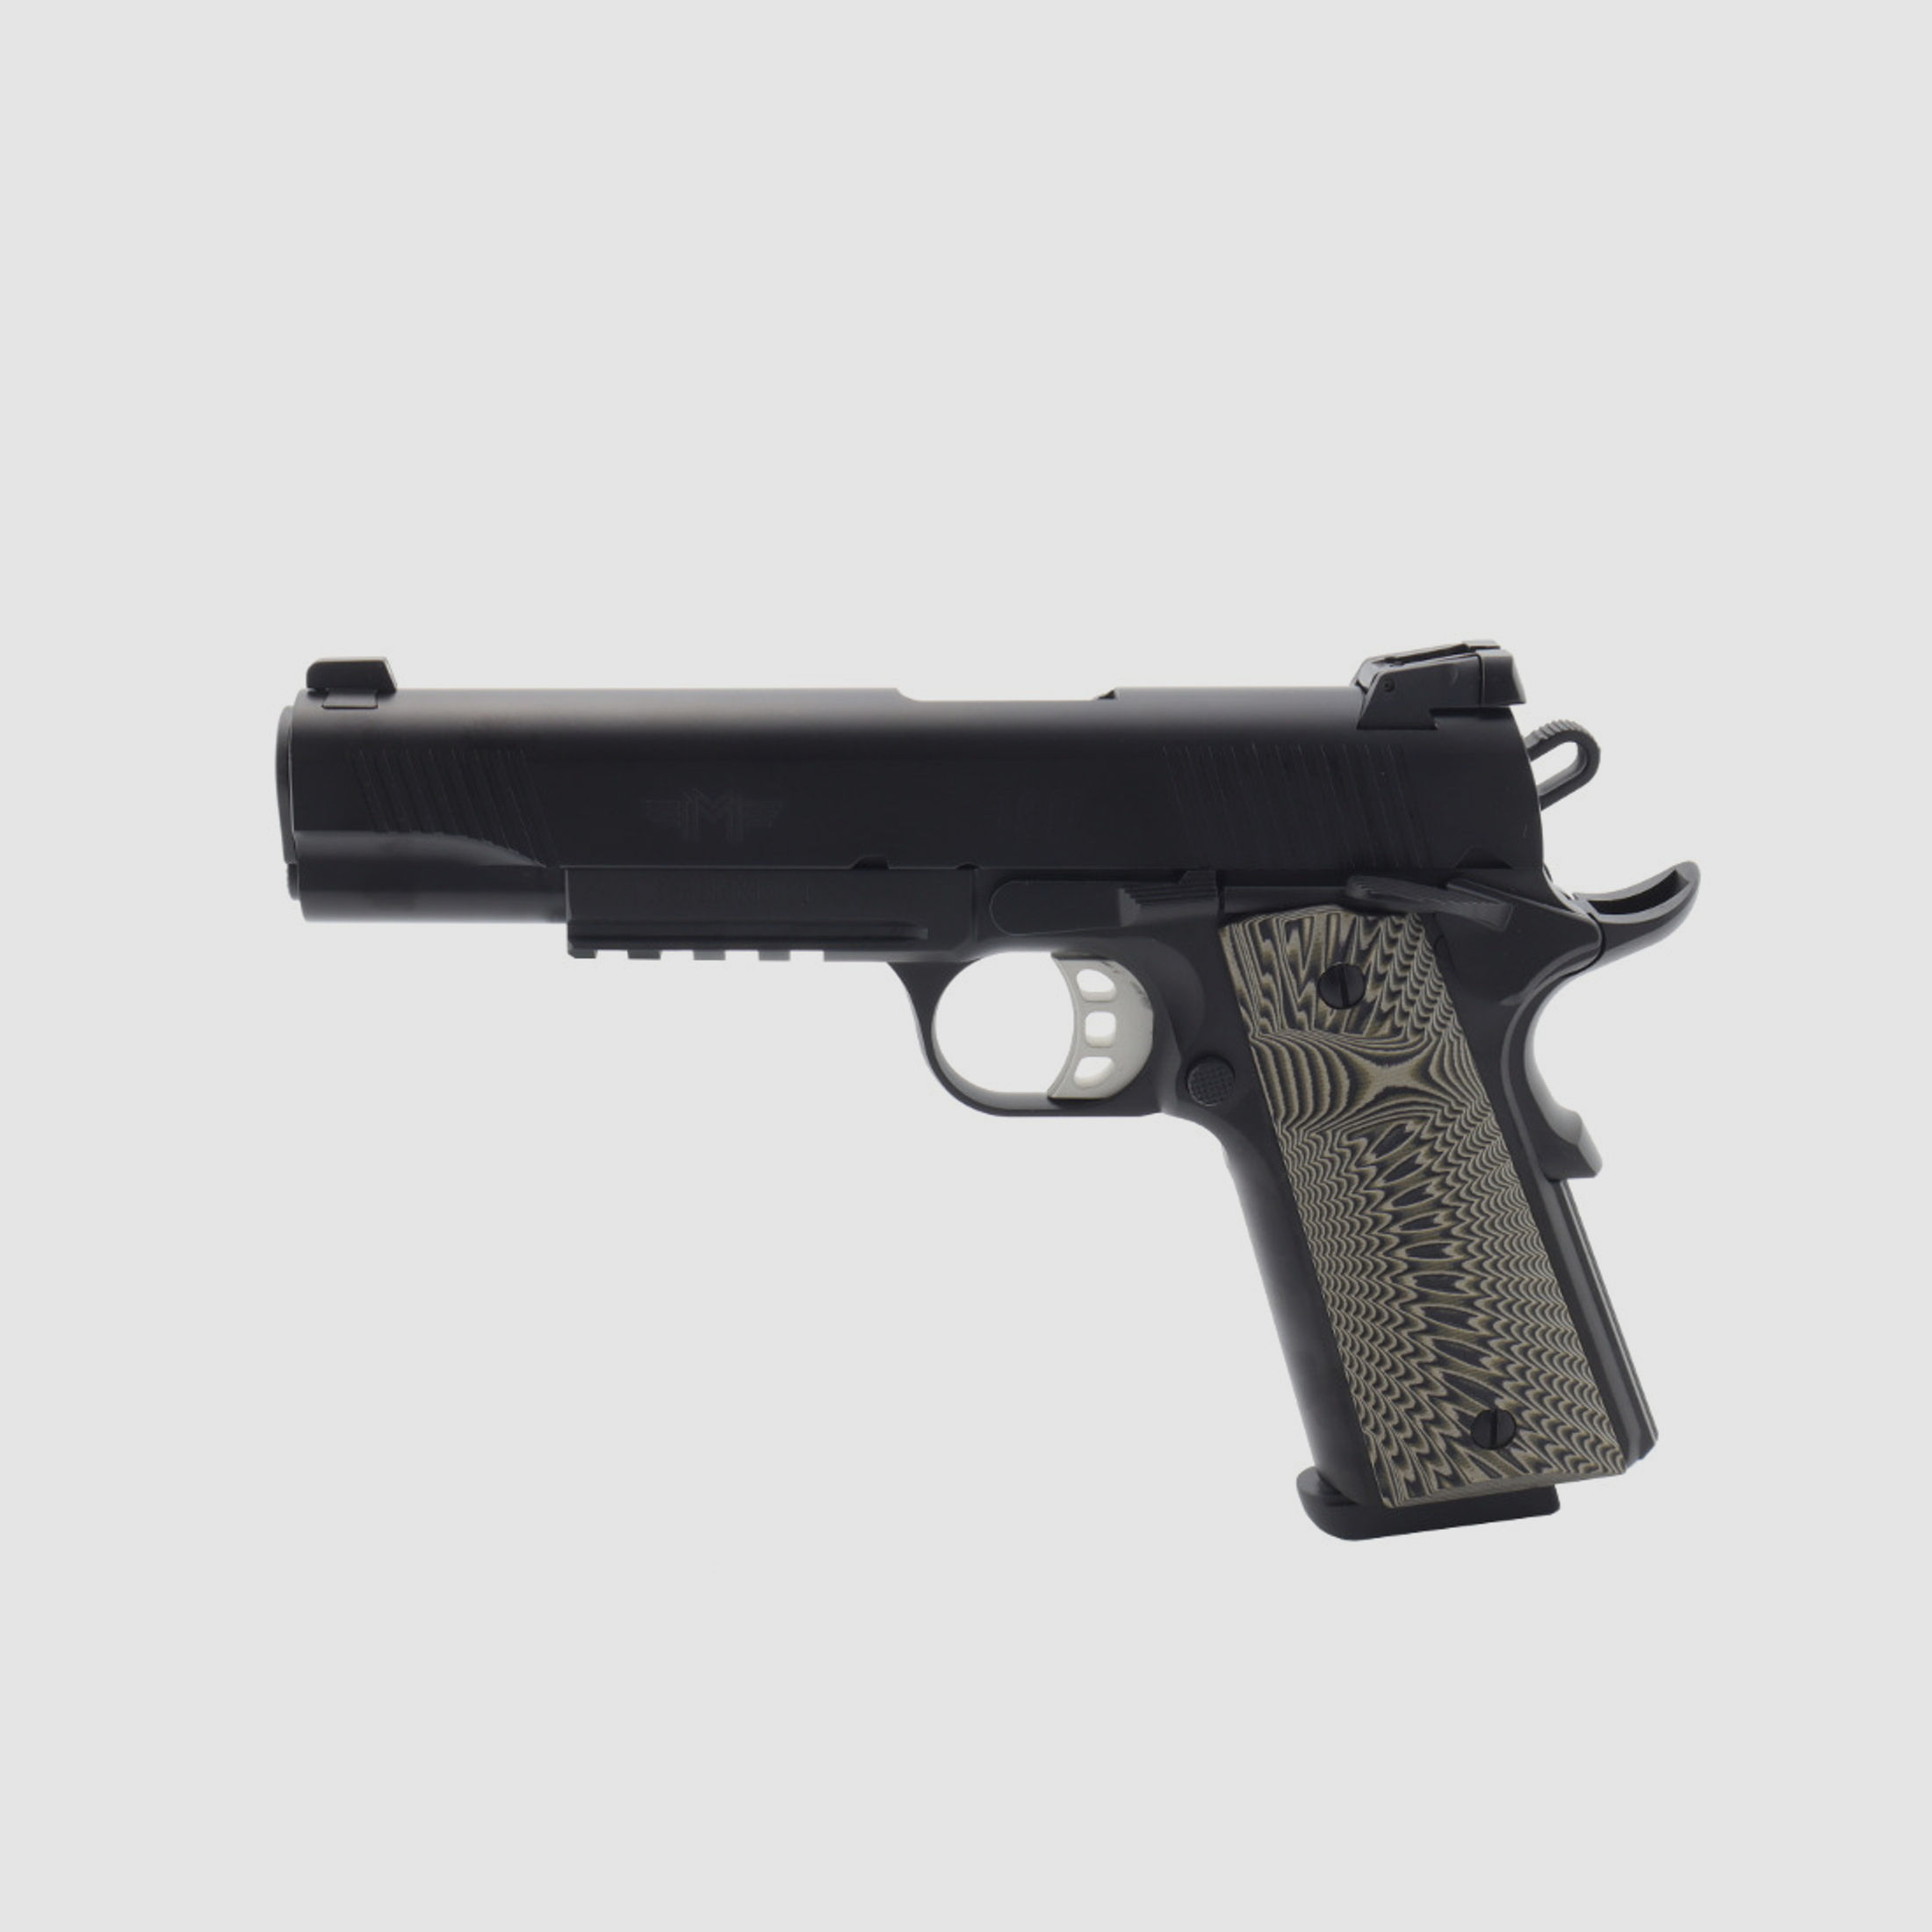  Messerschmitt Pistole ME 1911 Black 5" Kaliber: 9mm Luger 